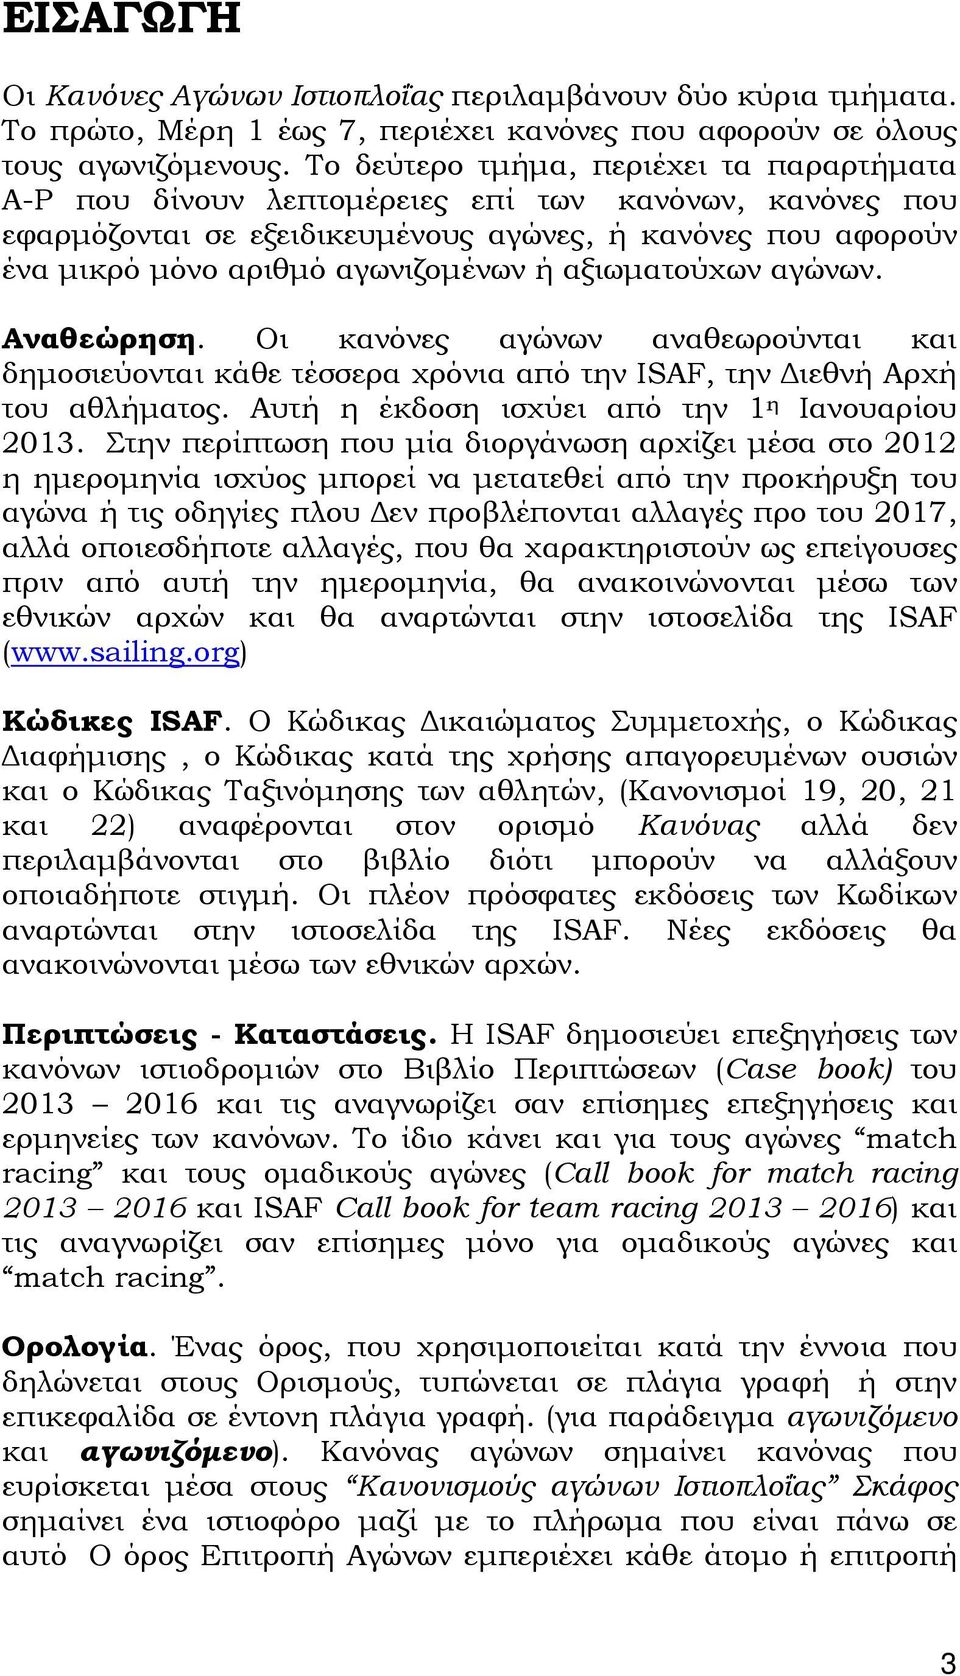 αξιωματούχων αγώνων. Αναθεώρηση. Οι κανόνες αγώνων αναθεωρούνται και δημοσιεύονται κάθε τέσσερα χρόνια από την ISAF, την Διεθνή Αρχή του αθλήματος. Αυτή η έκδοση ισχύει από την 1 η Ιανουαρίου 2013.